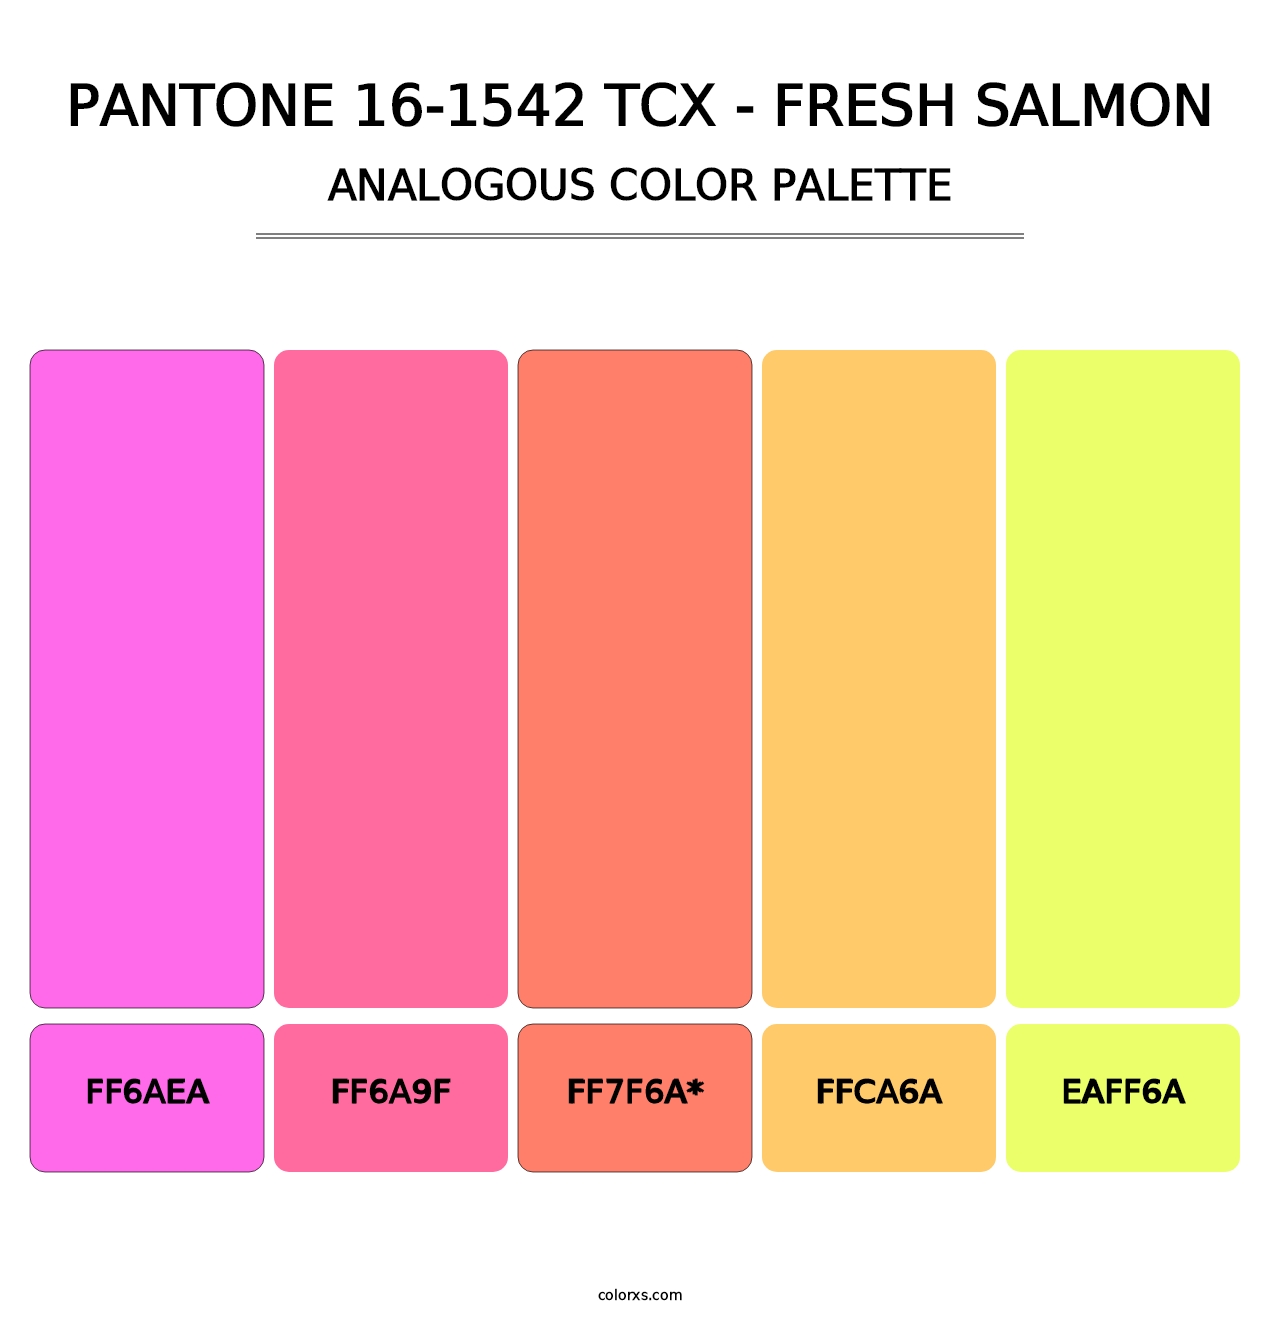 PANTONE 16-1542 TCX - Fresh Salmon - Analogous Color Palette